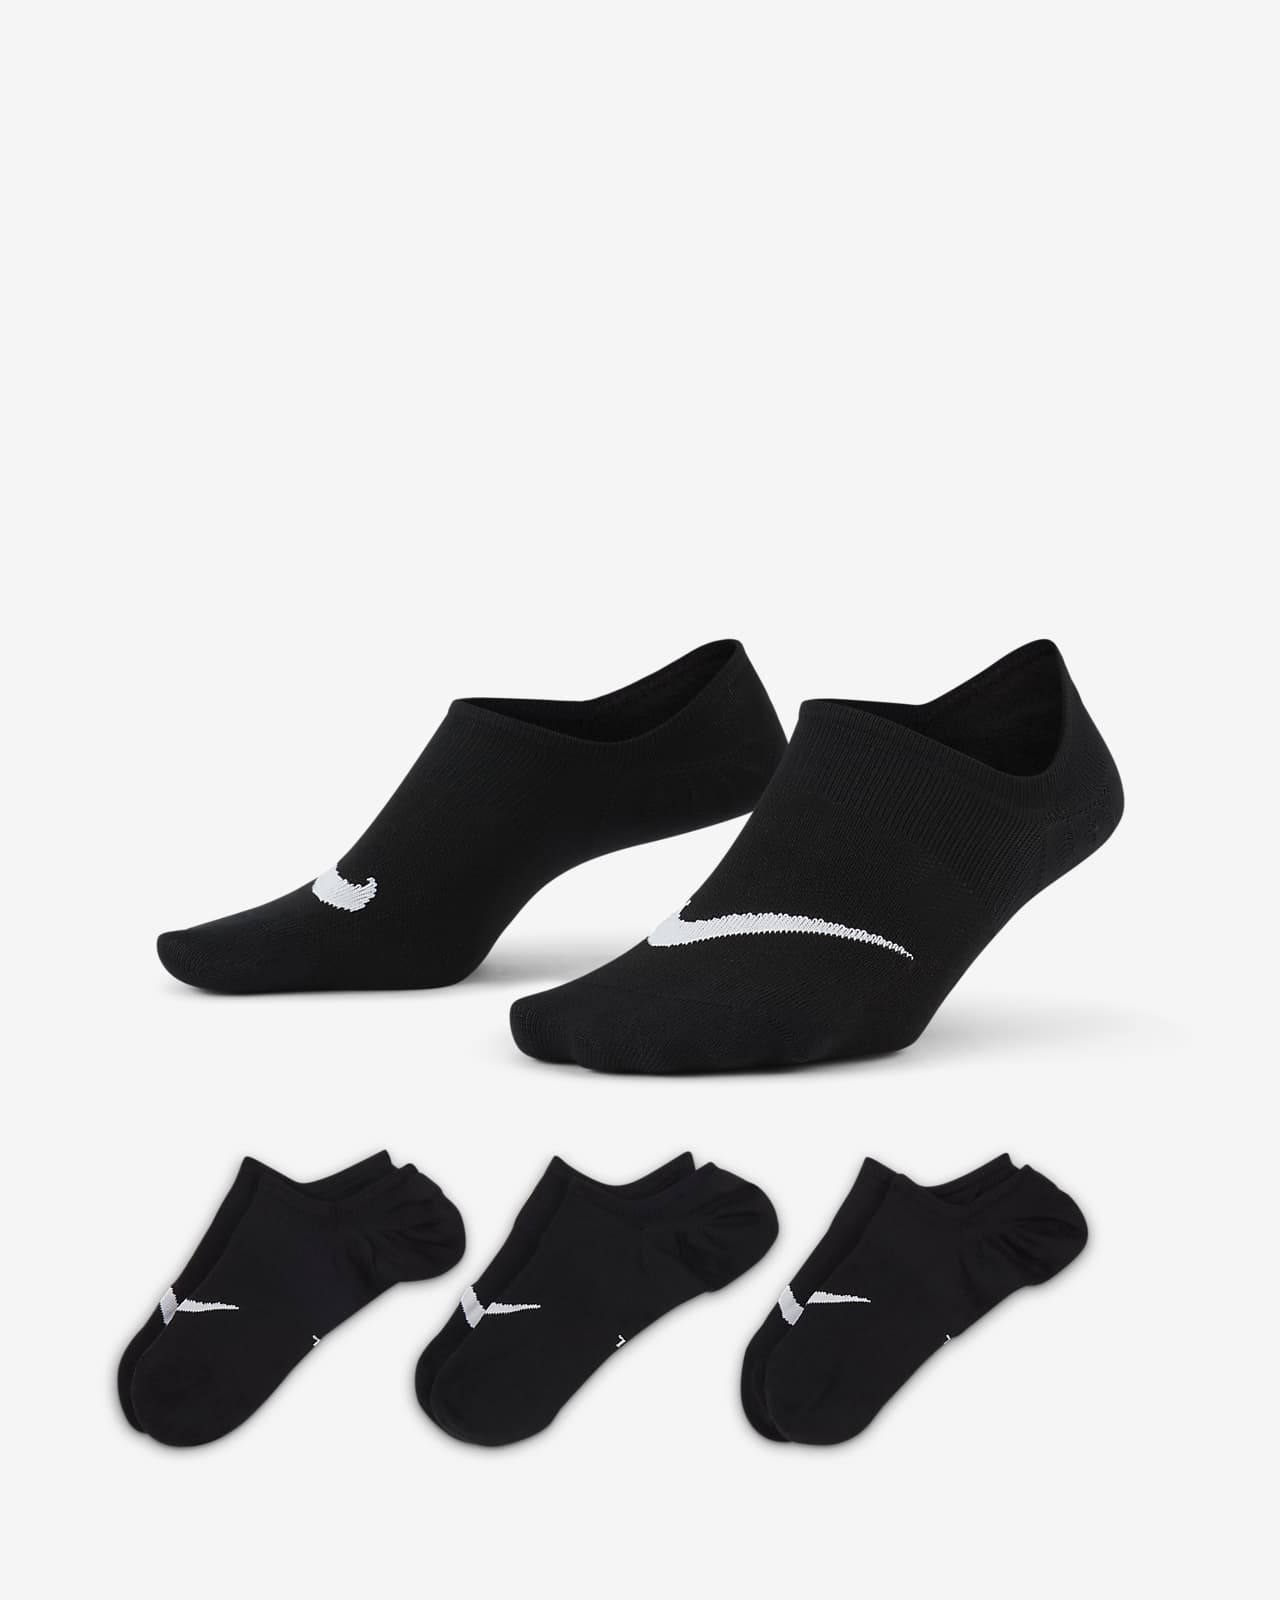 ถุงเท้าเทรนนิ่งผู้หญิงแบบซ่อน Nike Everyday Plus Lightweight (3 คู่)